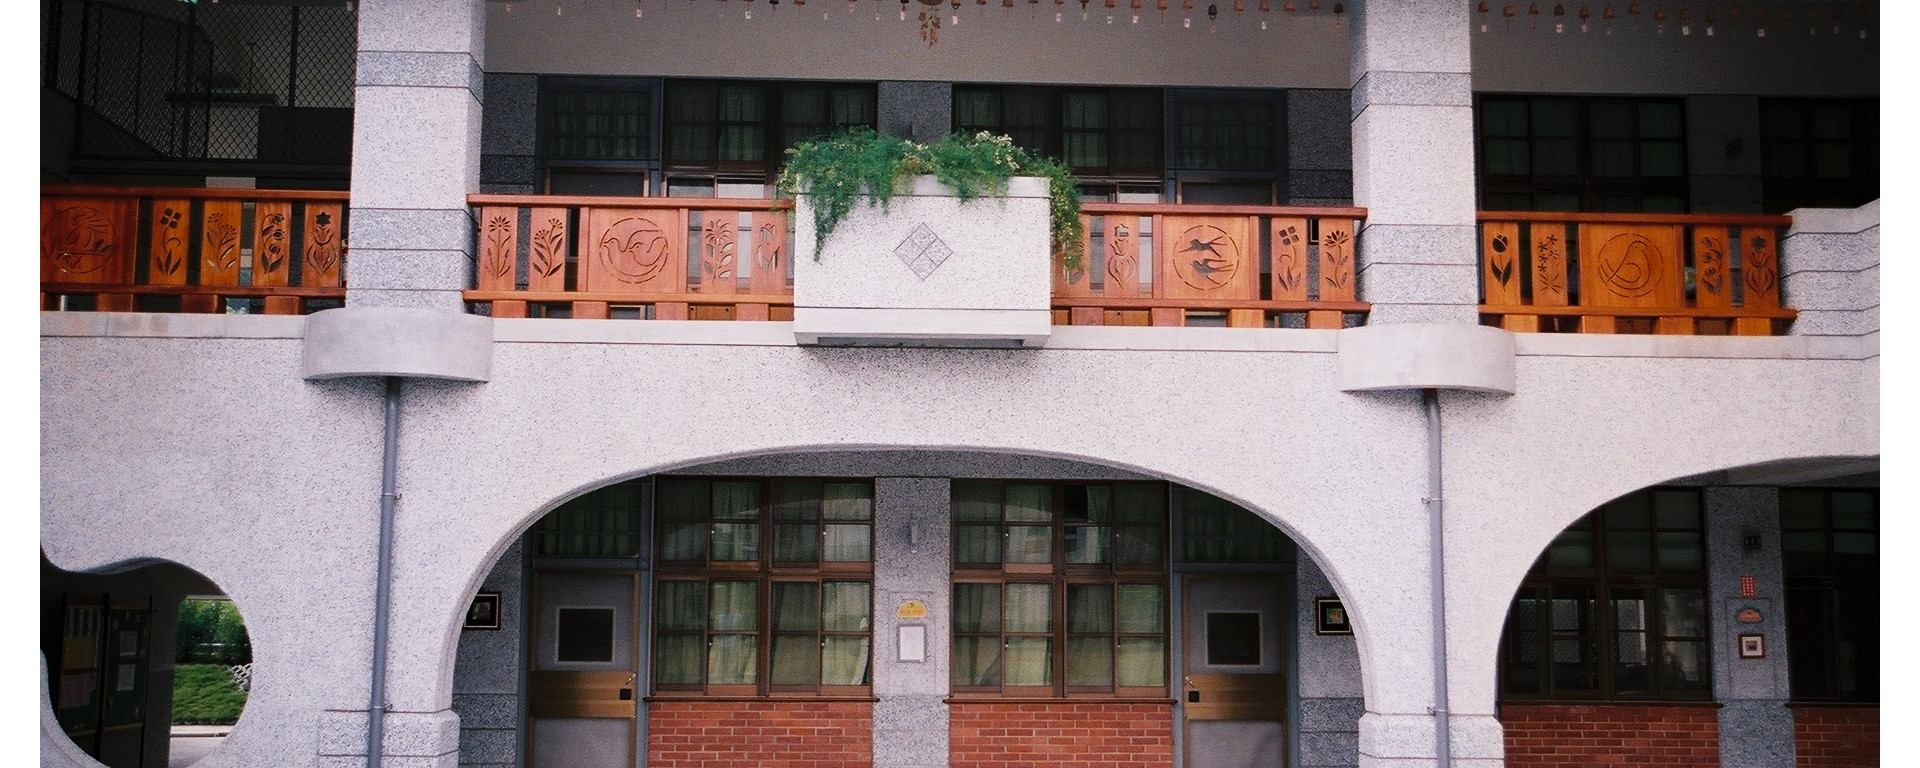 一樓走廊上的拱門造型及二樓有鏤空雕刻花鳥圖案的柚木欄杆